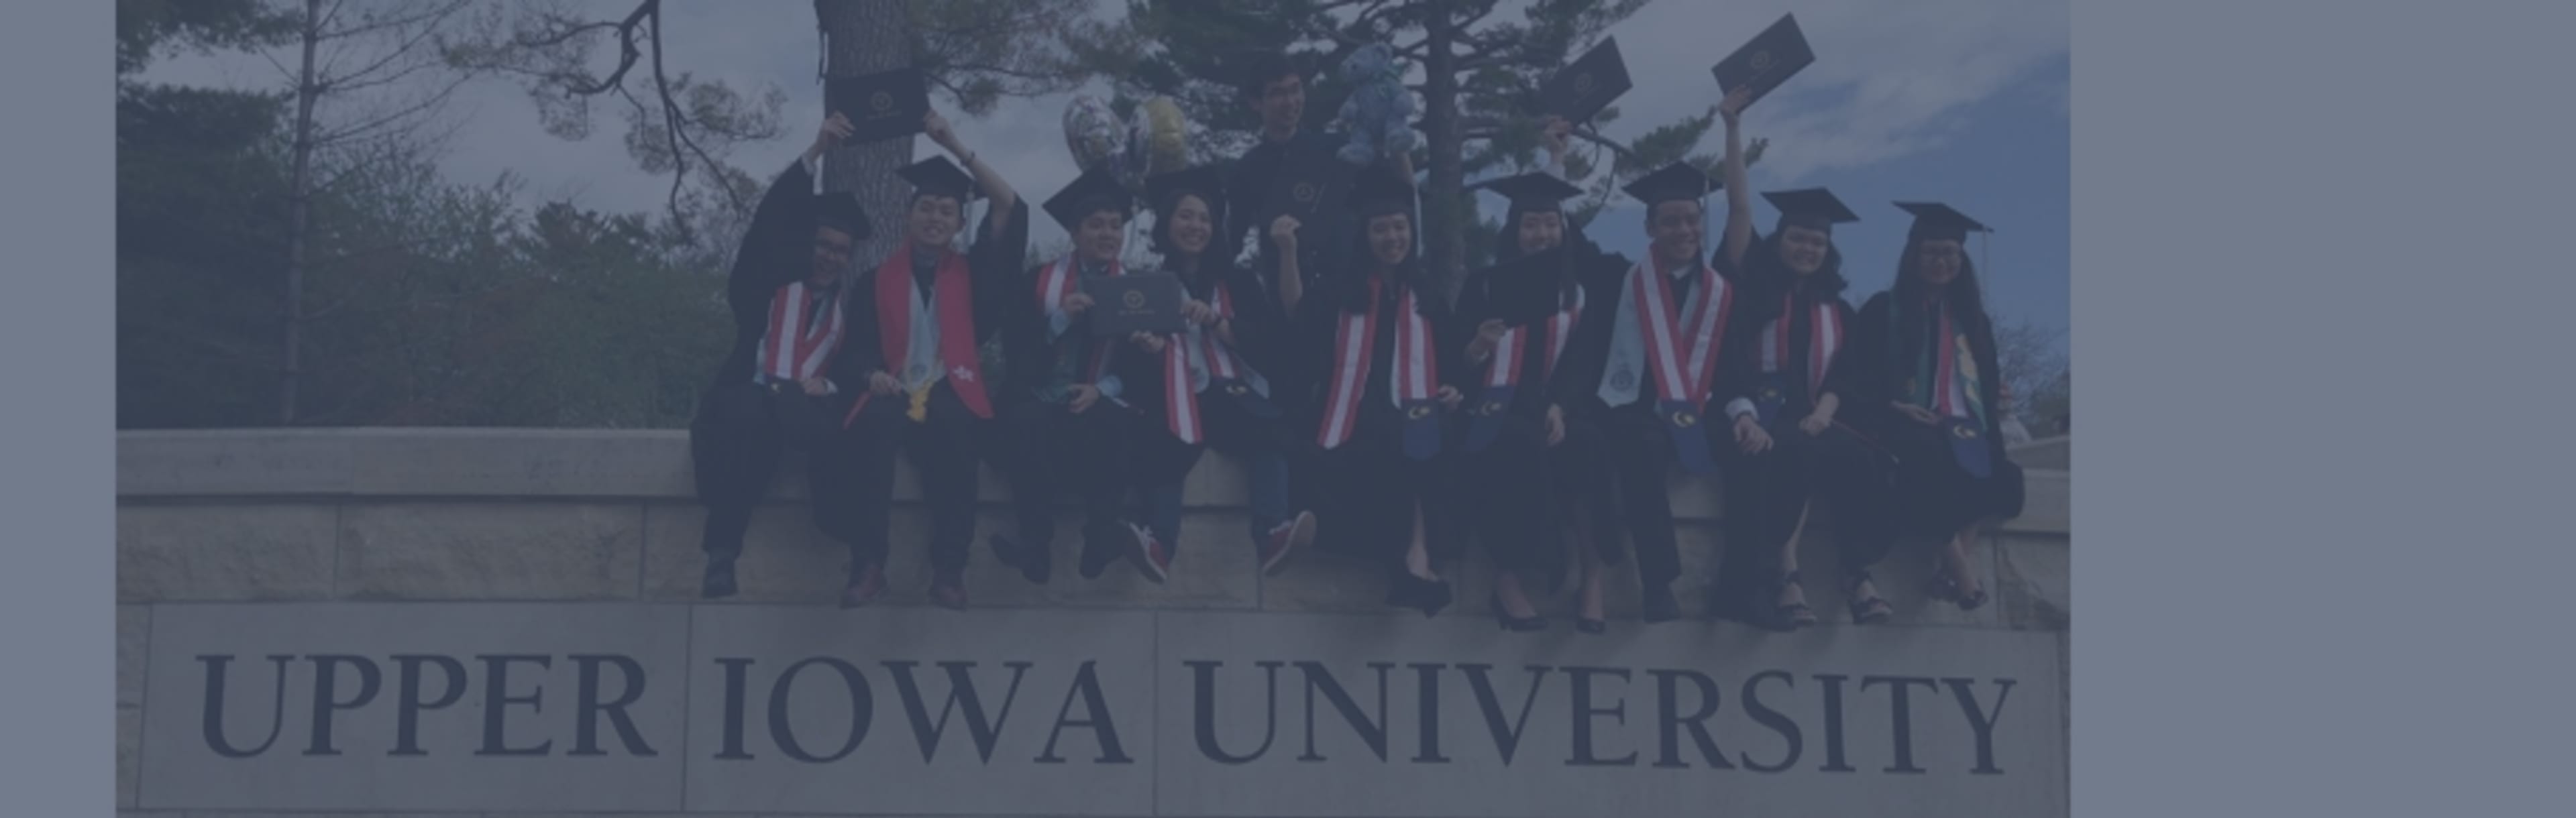 Upper Iowa University MBA en Gestión Financiera Corporativa